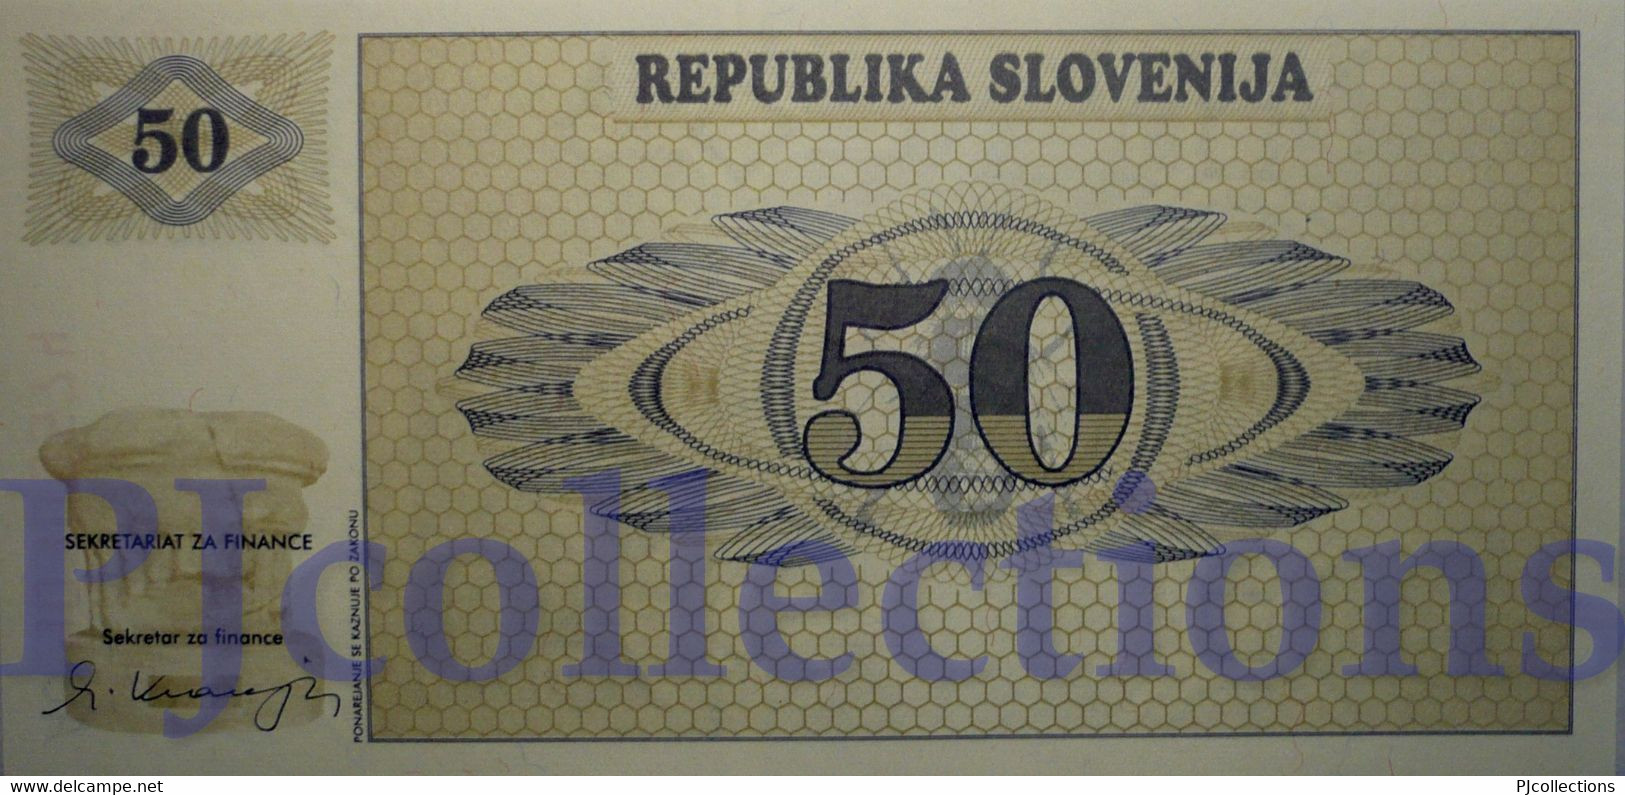 SLOVENIA 50 TOLARJEV 1990 PICK 5s1 SPECIMEN UNC - Slovénie